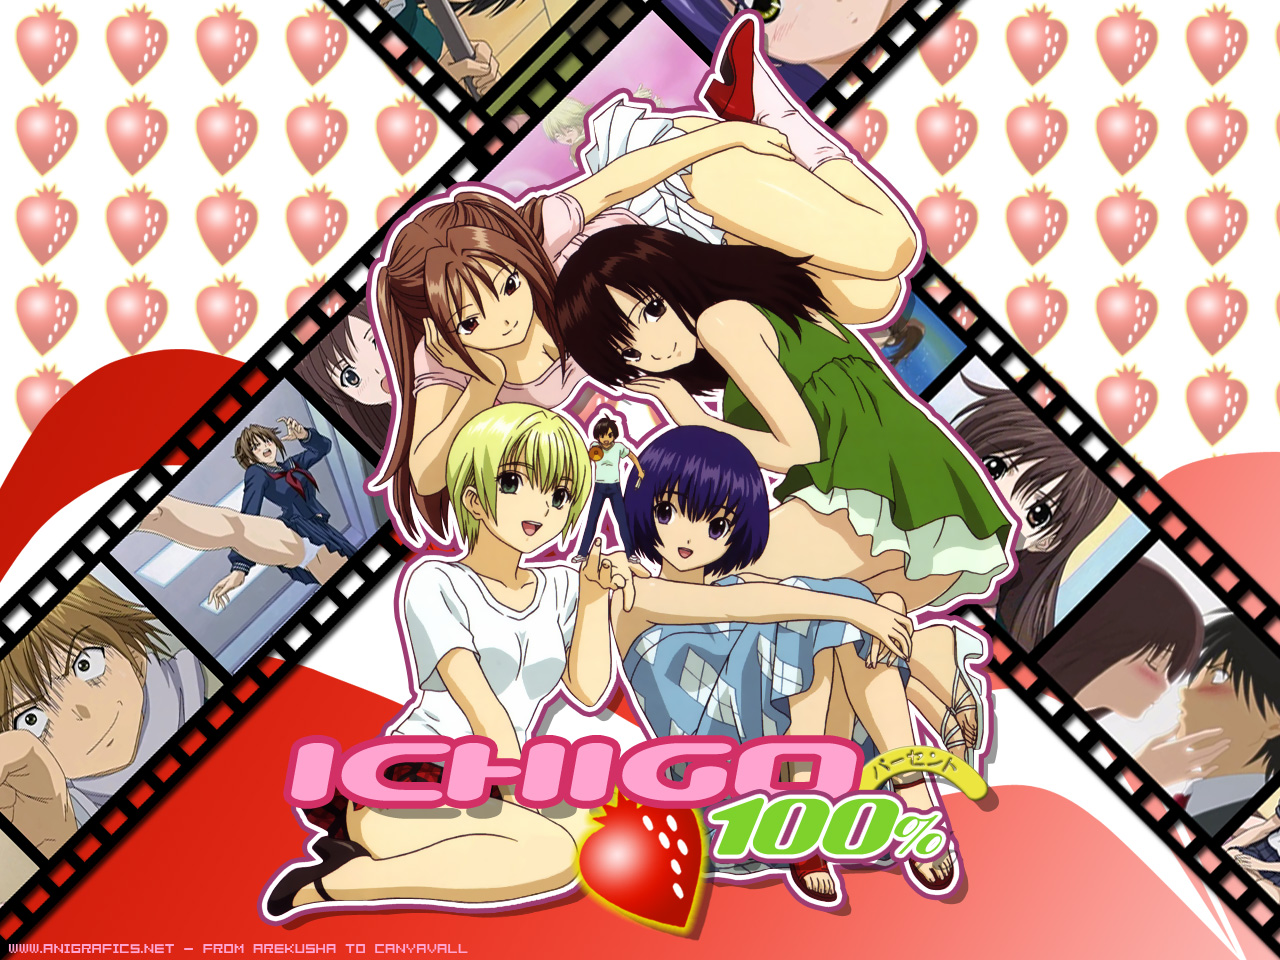 Ichigo 100% Pics, Anime Collection